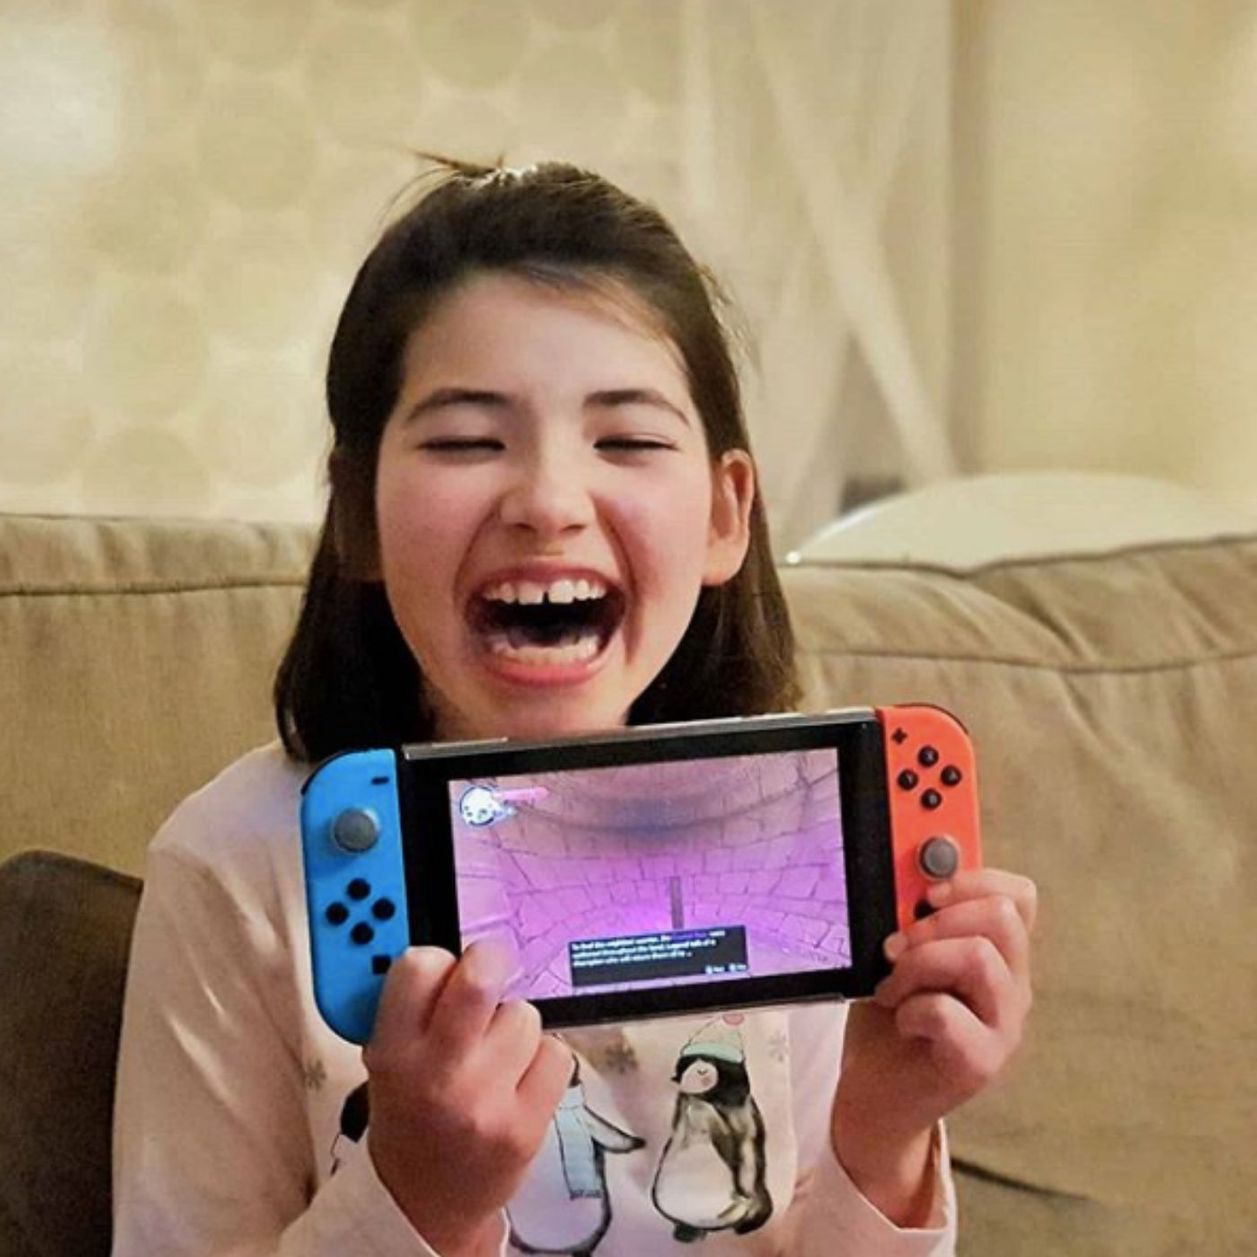 Un papa britannique fabrique une manette de jeux vidéo pour sa fille atteinte d'un handicap